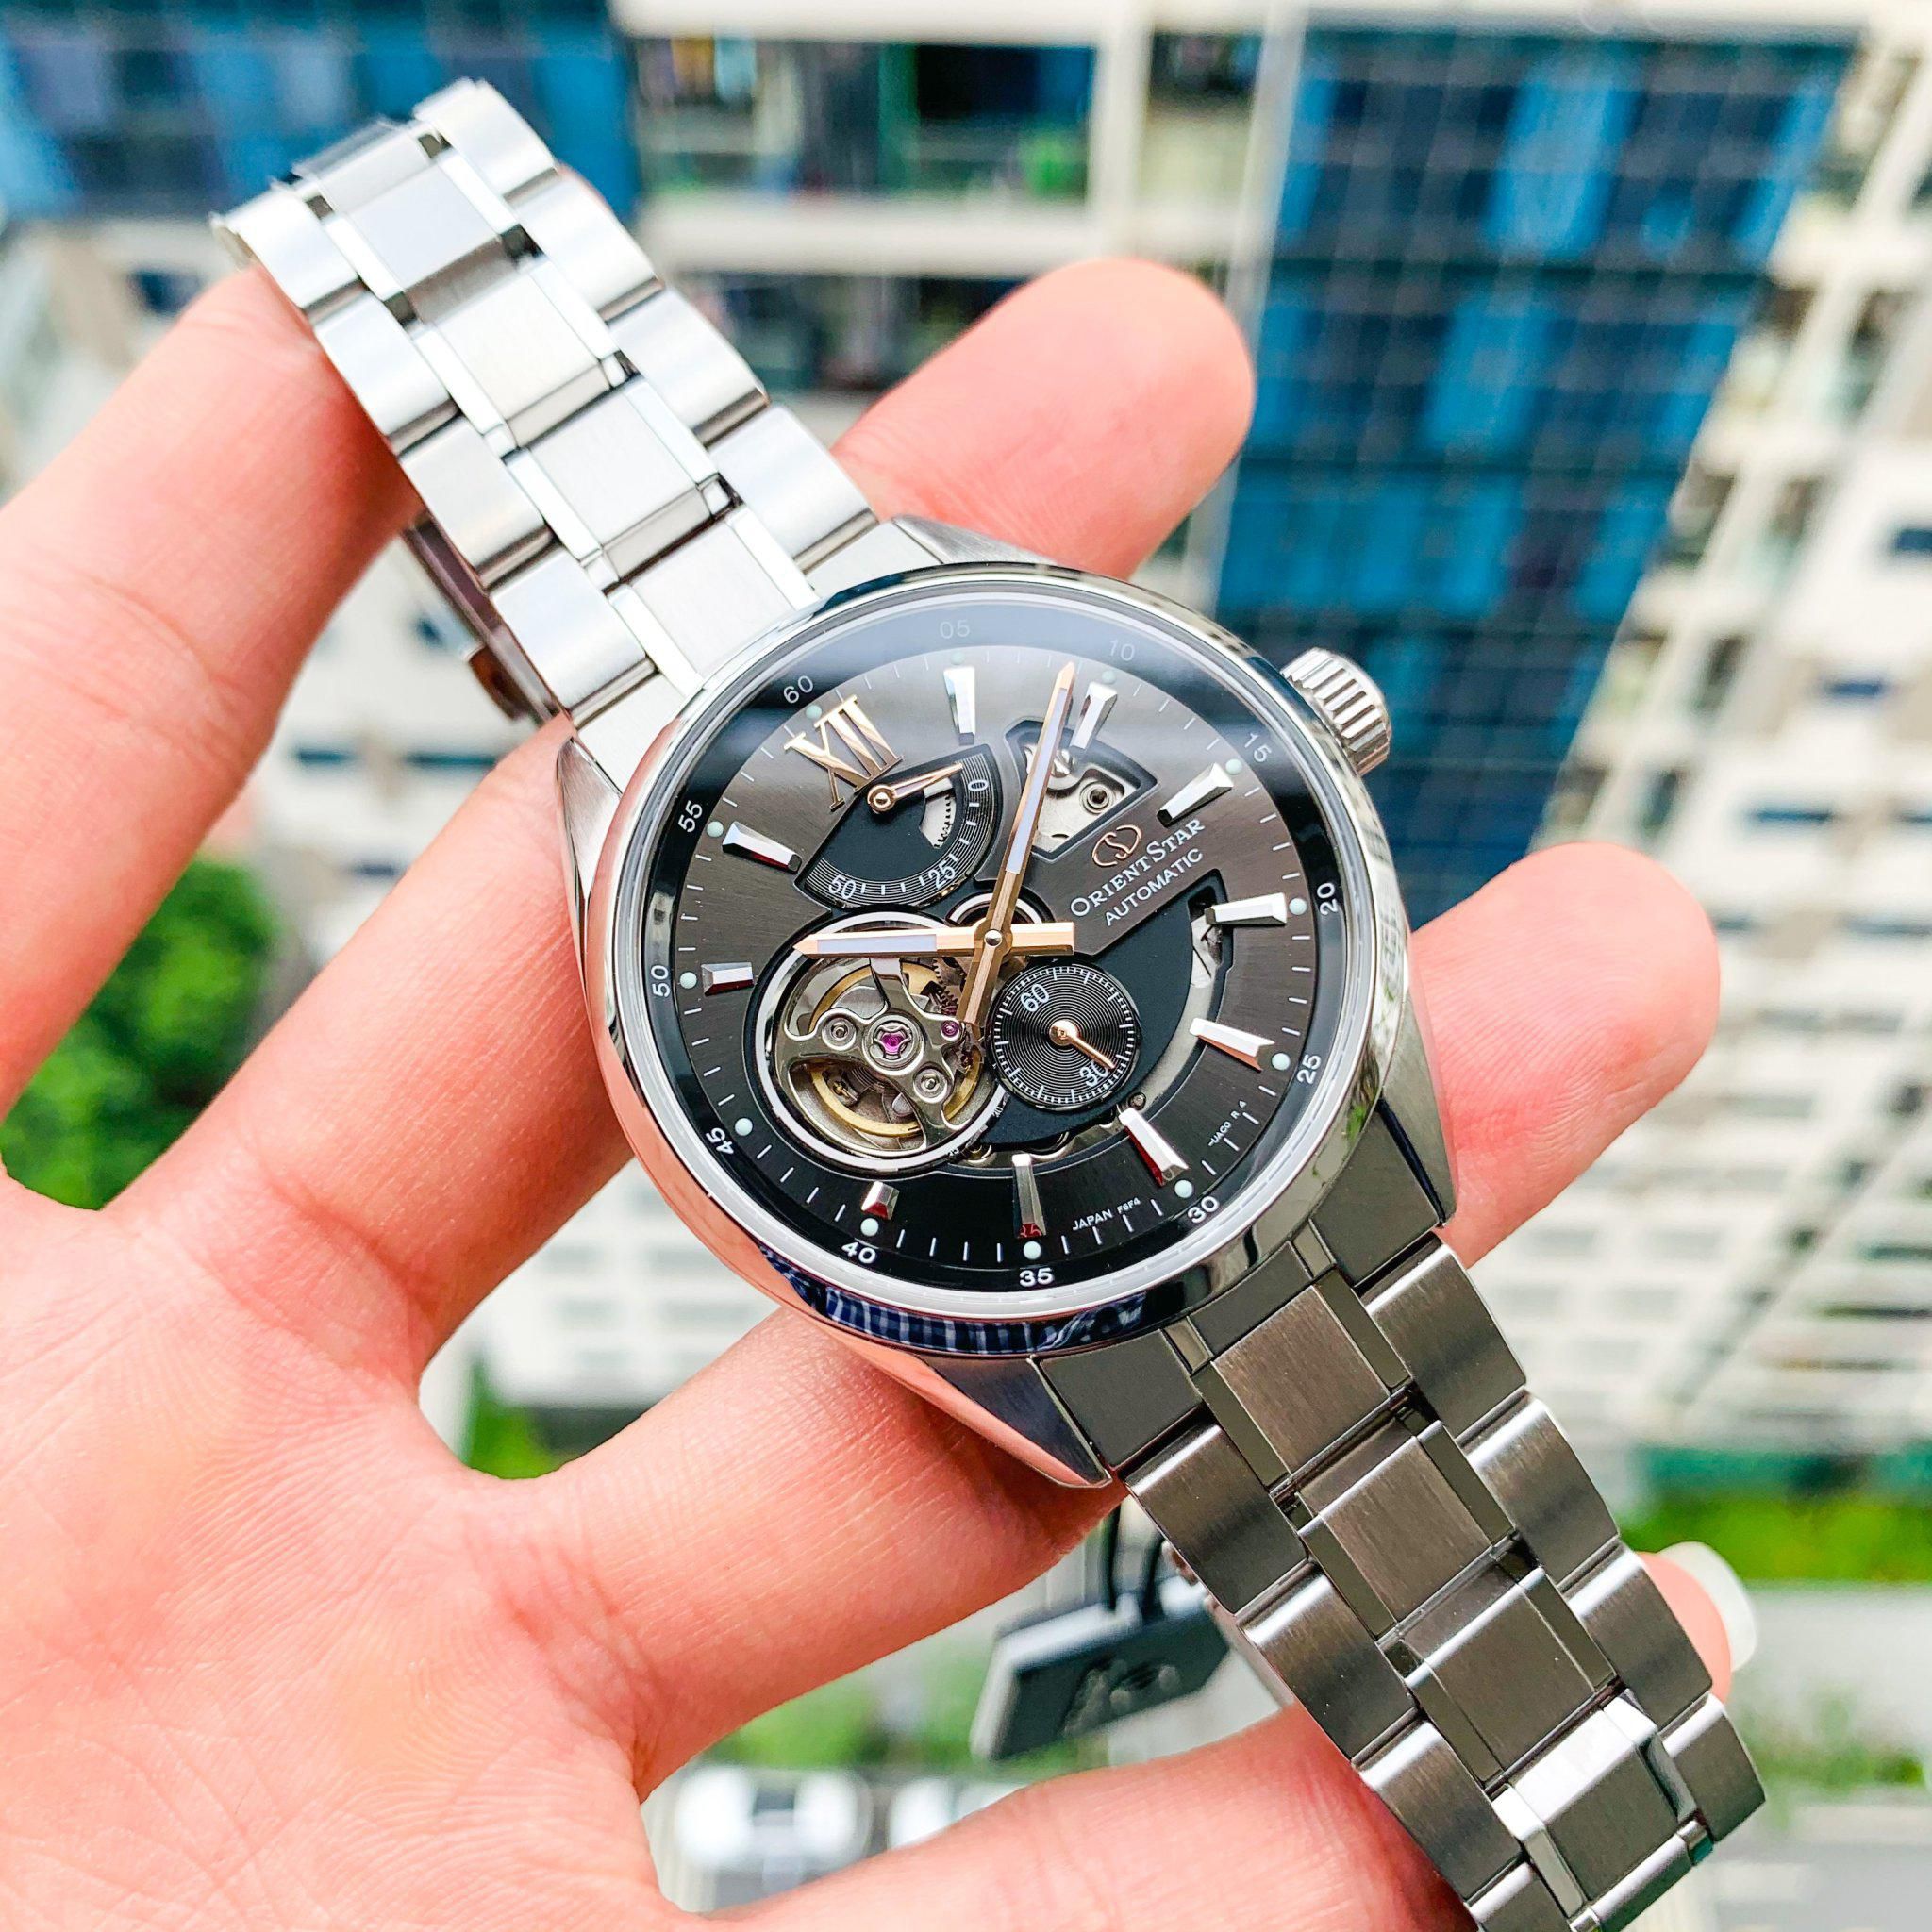 Mua Đồng hồ Orient tại Đồng Hới Quảng Bình - Đồng hồ chính hãng, giá tốt nhất - Orient Star Joker Skeleton Gray - RE-AV0004N